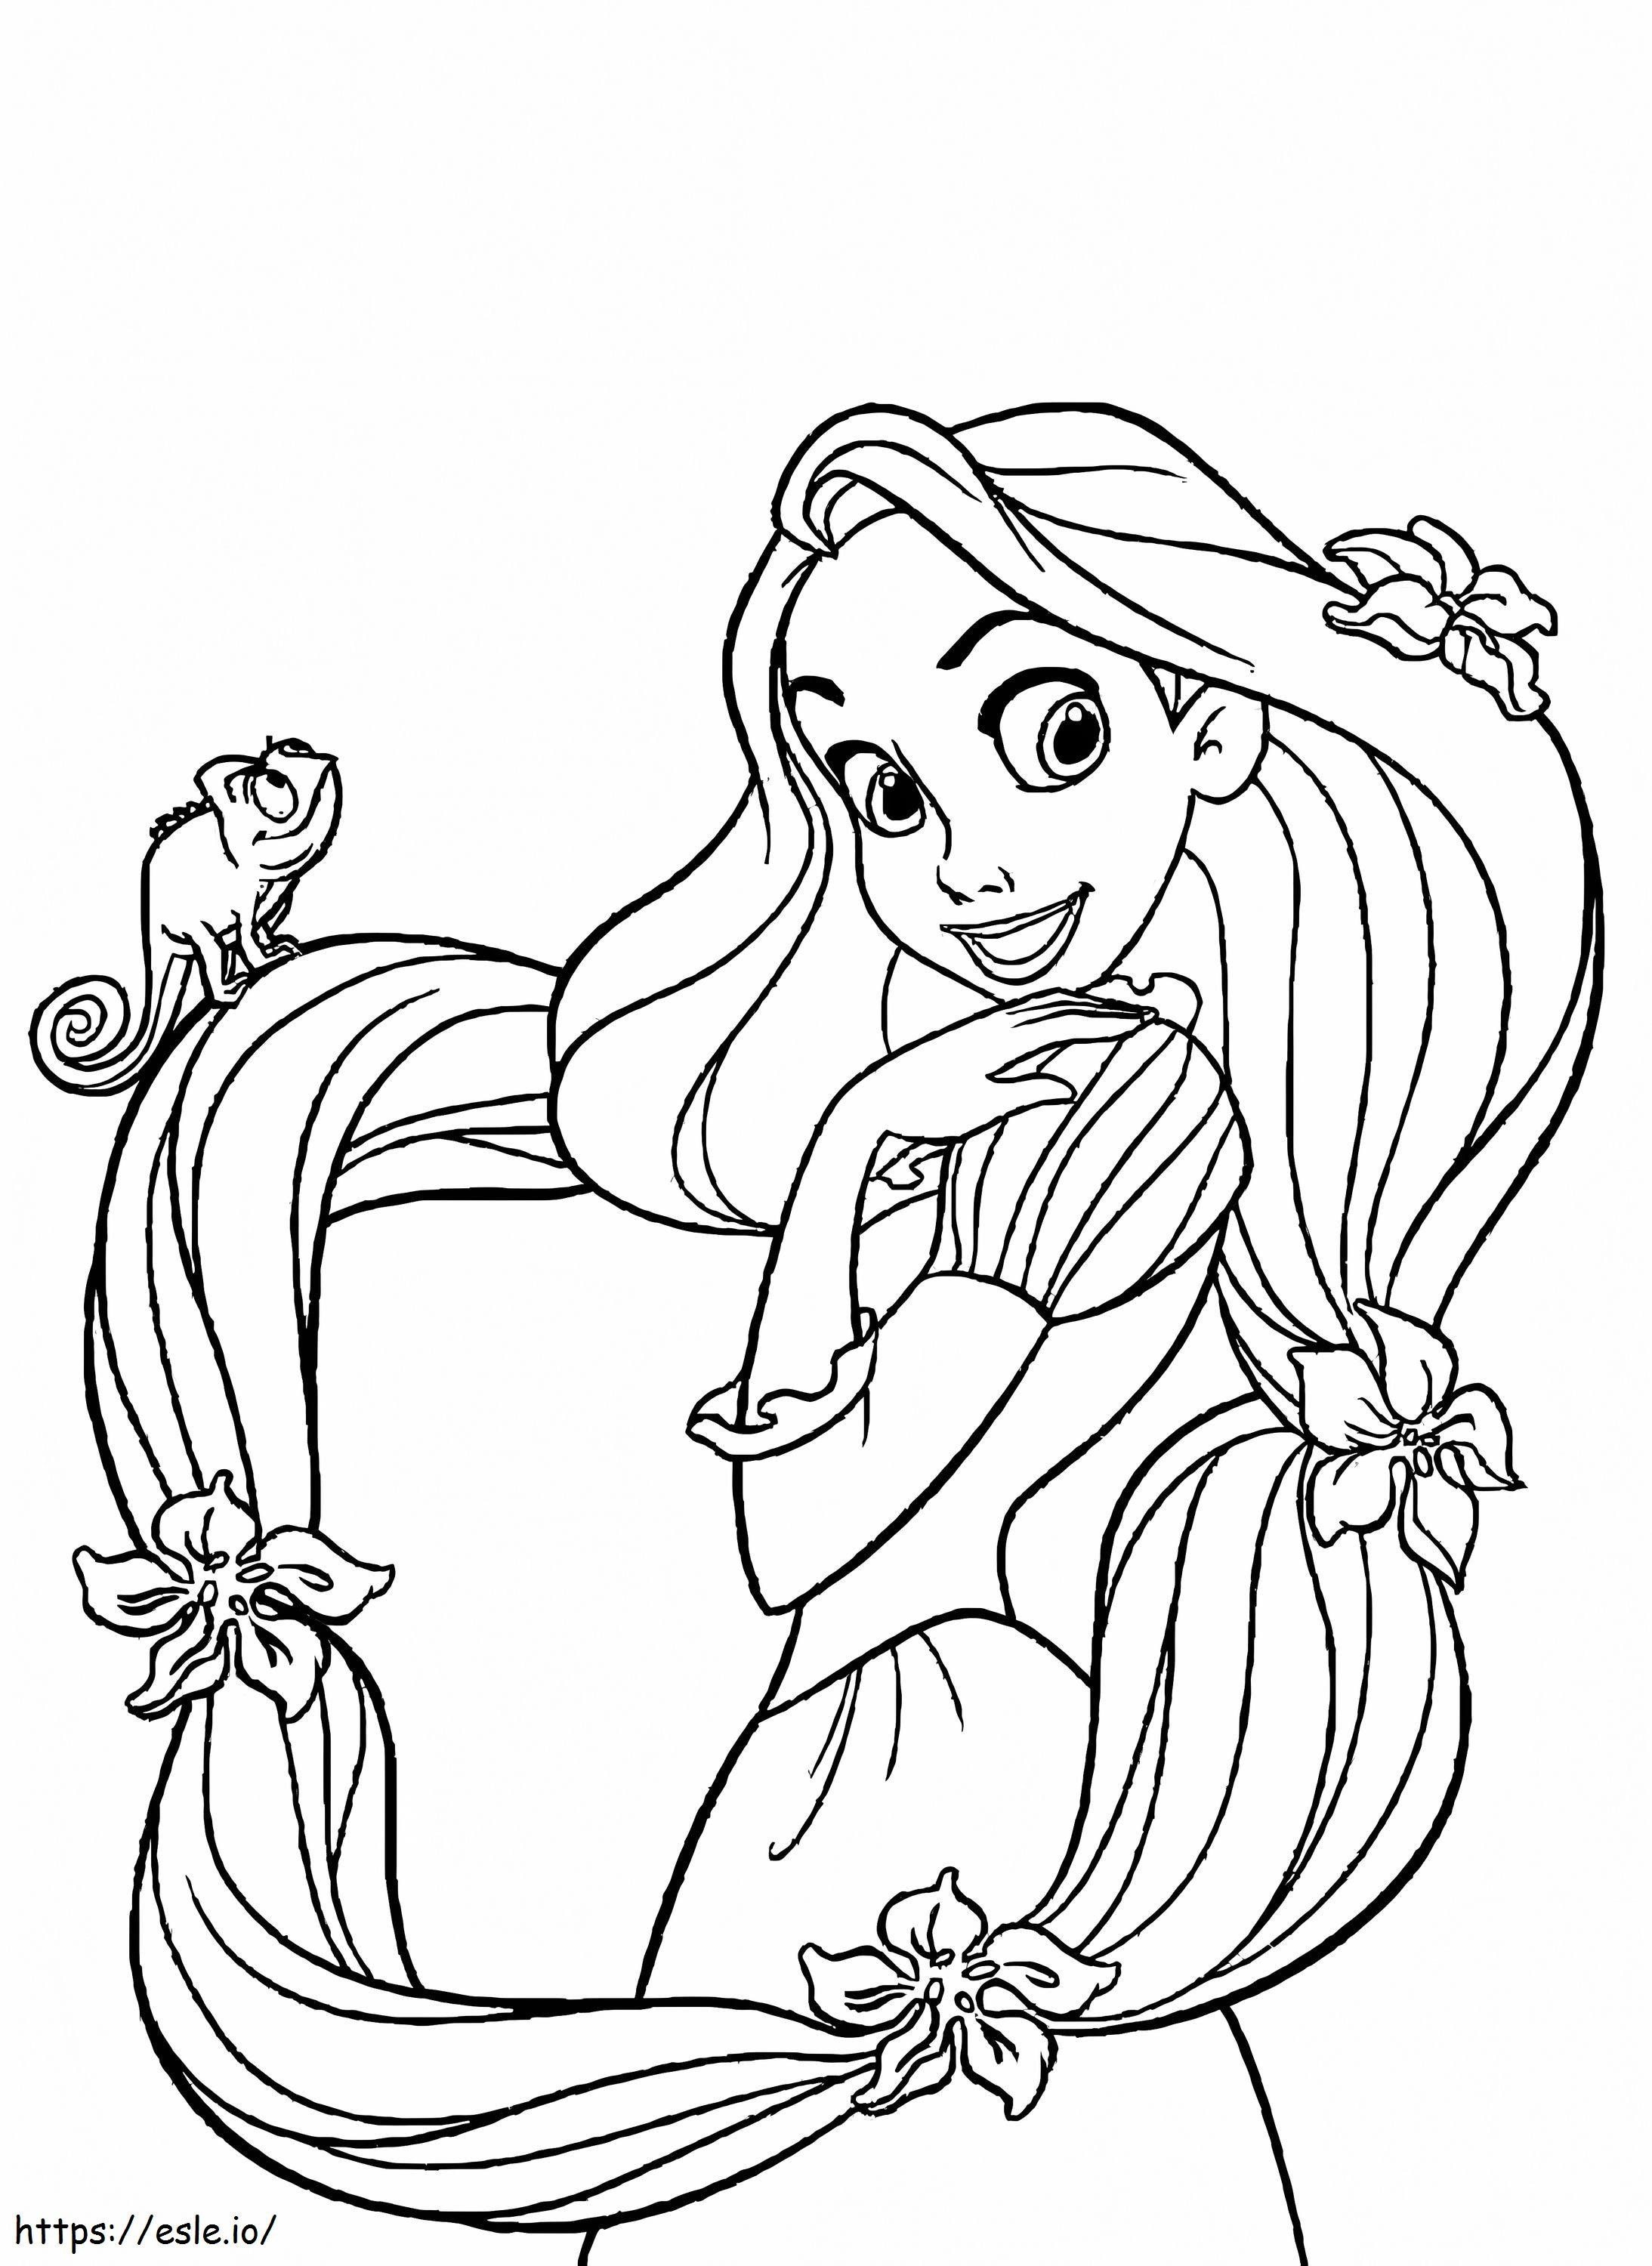 Rapunzel básico com lagartixa para colorir